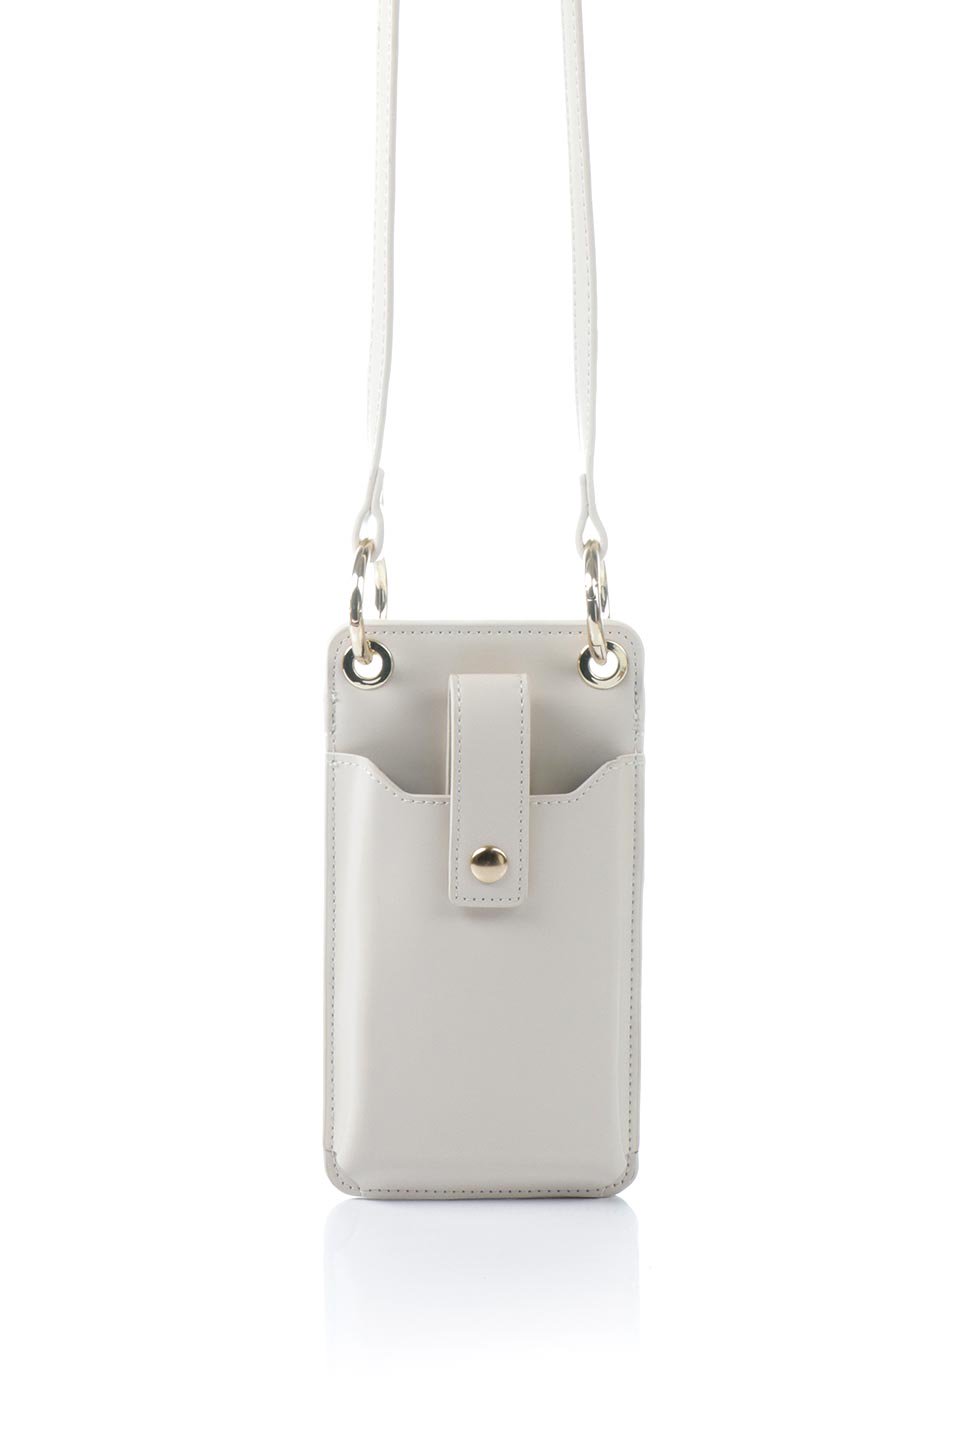 meliebiancoのTina(Ivory)財布機能付き・スマホショルダー/海外ファッション好きにオススメのインポートバッグとかばん、MelieBianco（メリービアンコ）のバッグやその他。斜め掛けが便利なお財布としても使えるスマホショルダー。iPhone13ProMaxまでの大きさのスマホに対応するケースに、ファスナー付きのコインポケットと10個のカードスロットがついています。